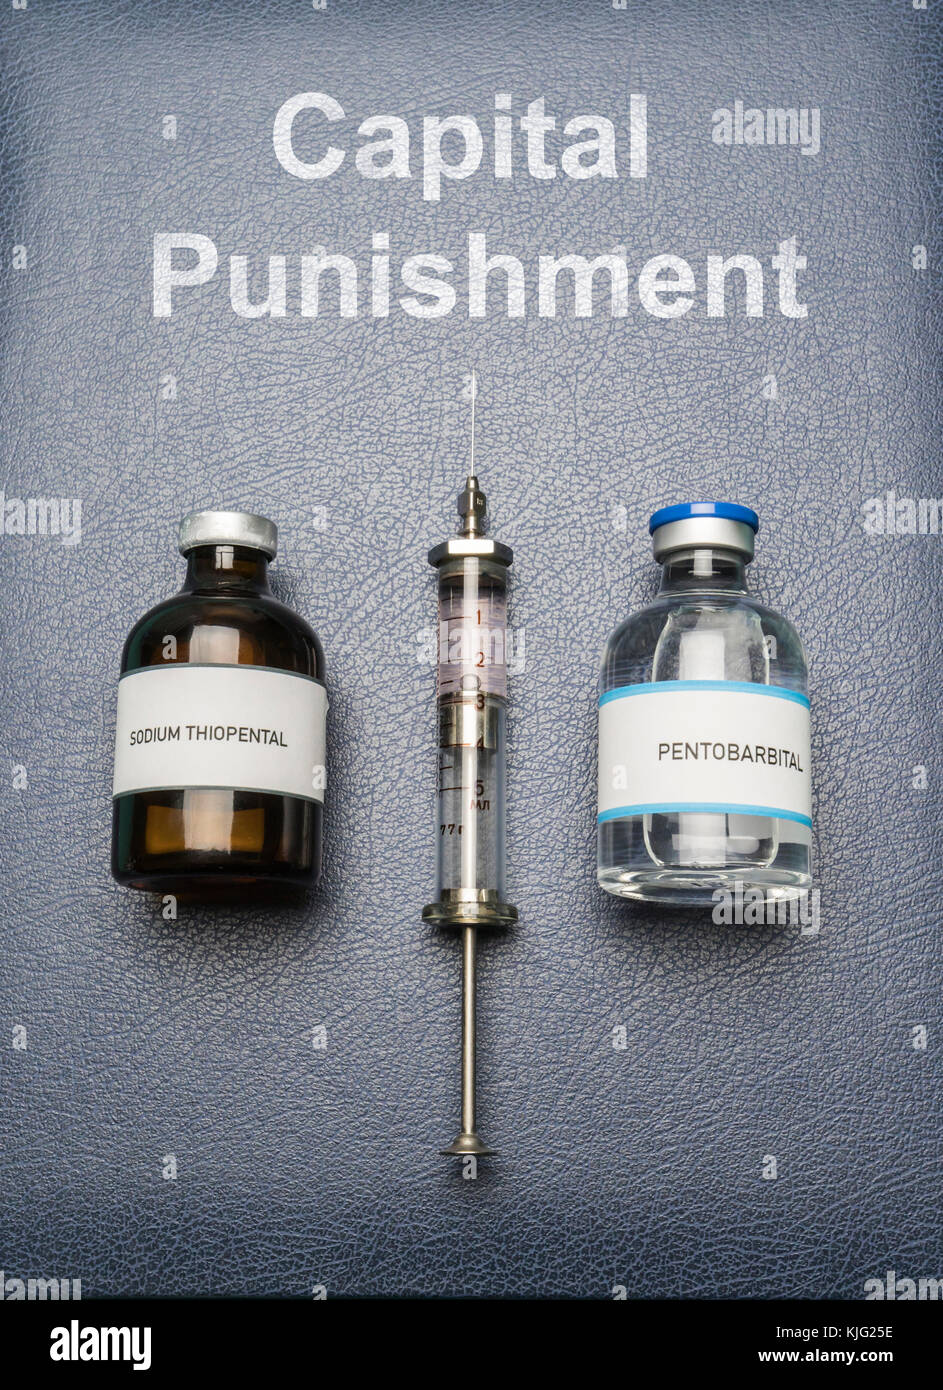 Jeringa vintage y los fármacos utilizados en la inyección letal en un libro de la pena capital, composición digital, imagen conceptual Foto de stock